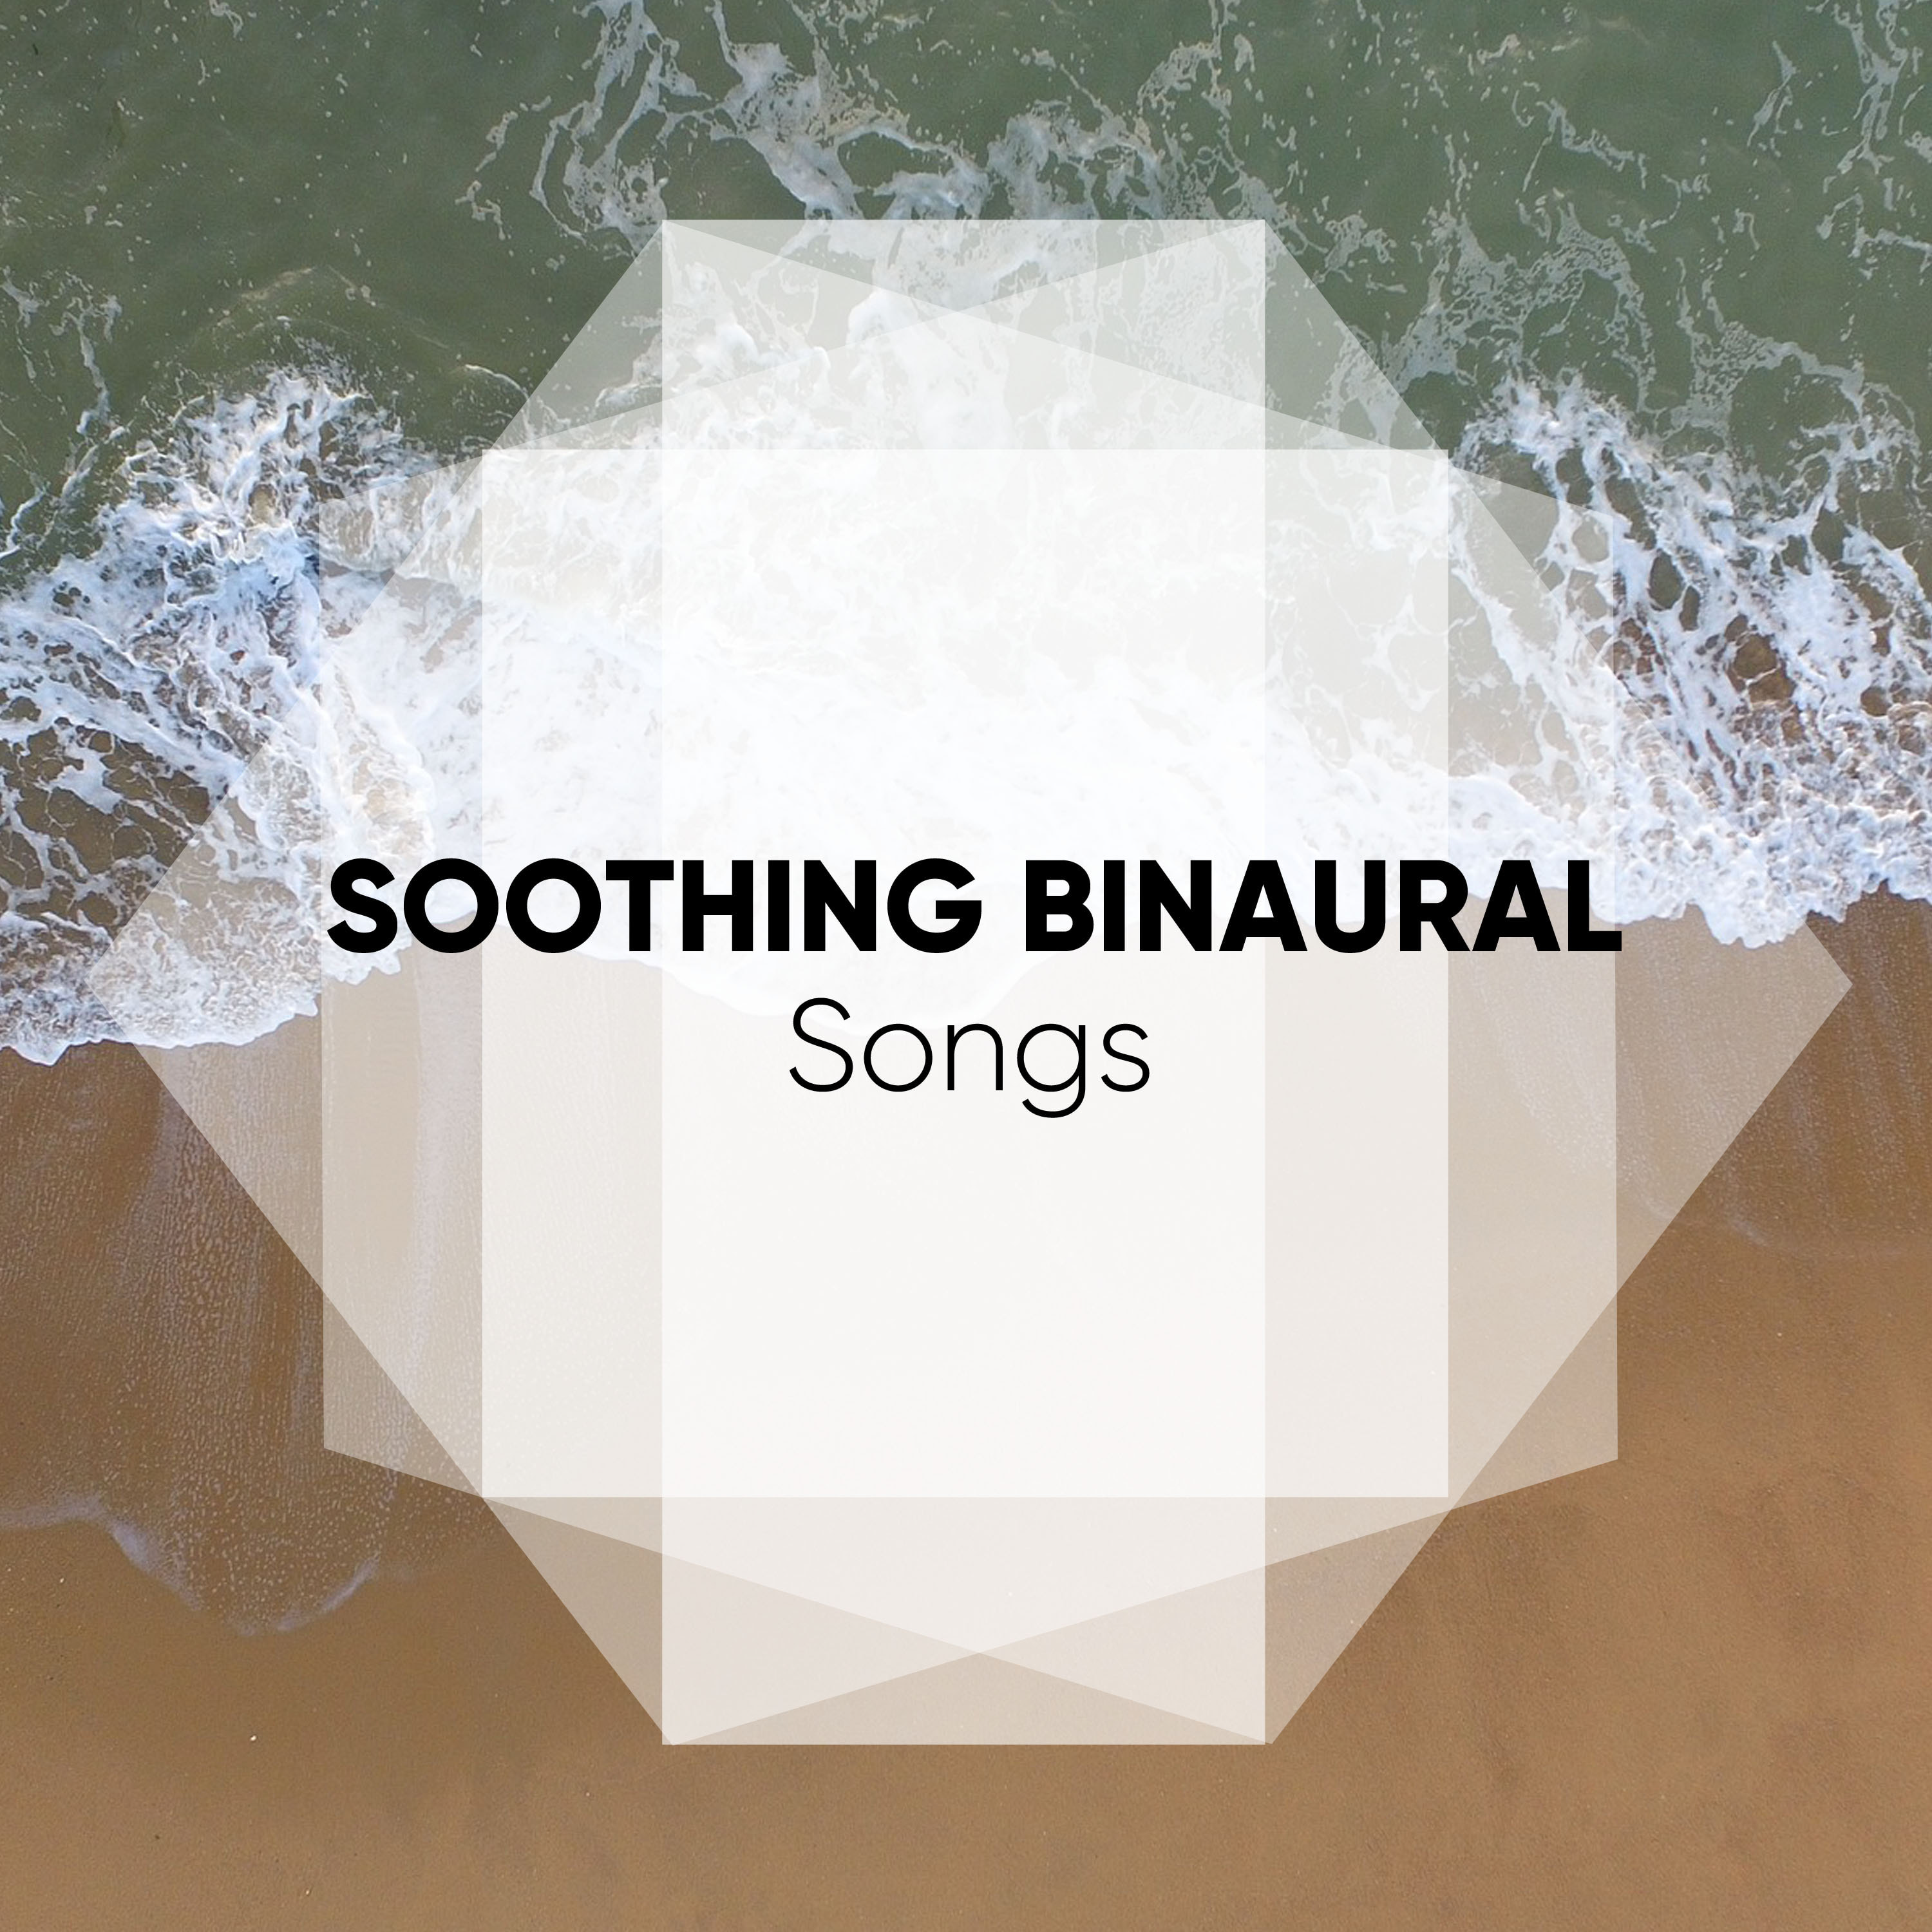 Soothing Binaural Songs